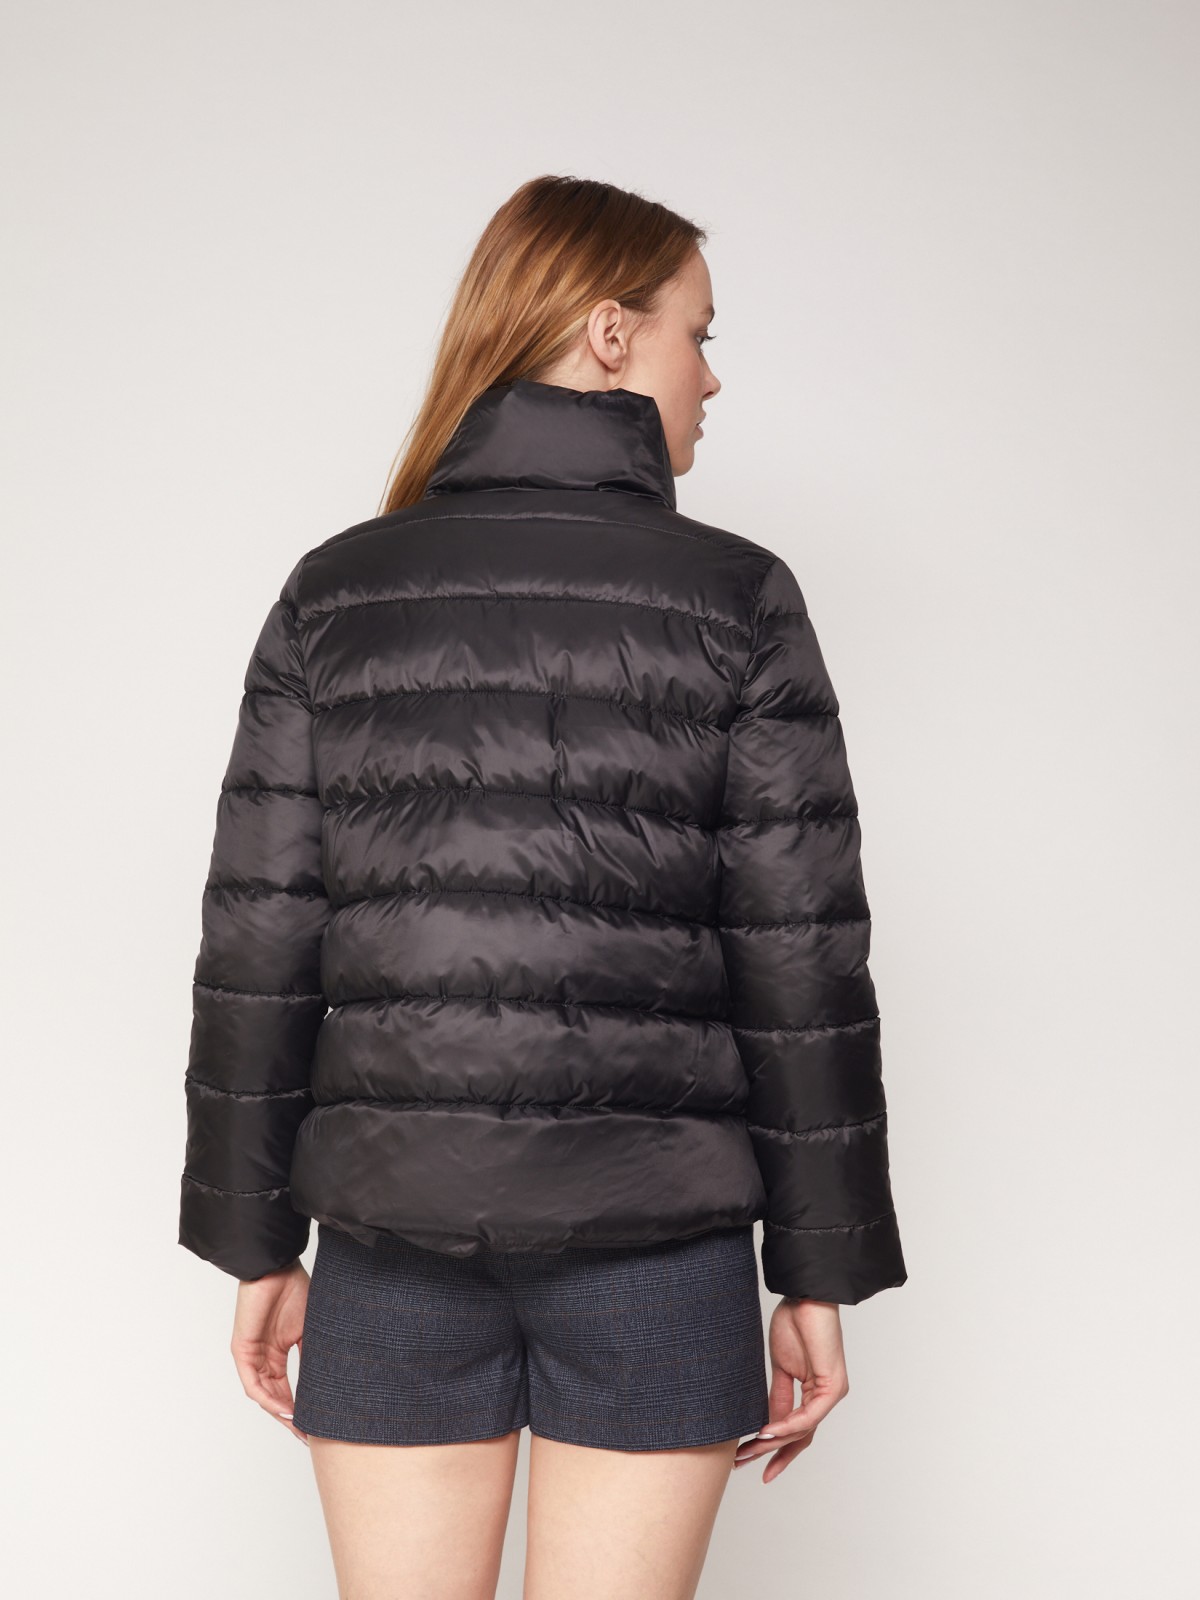 Утеплённая короткая куртка с высоким воротником-стойкой zolla 021335102044, цвет черный, размер XS - фото 6